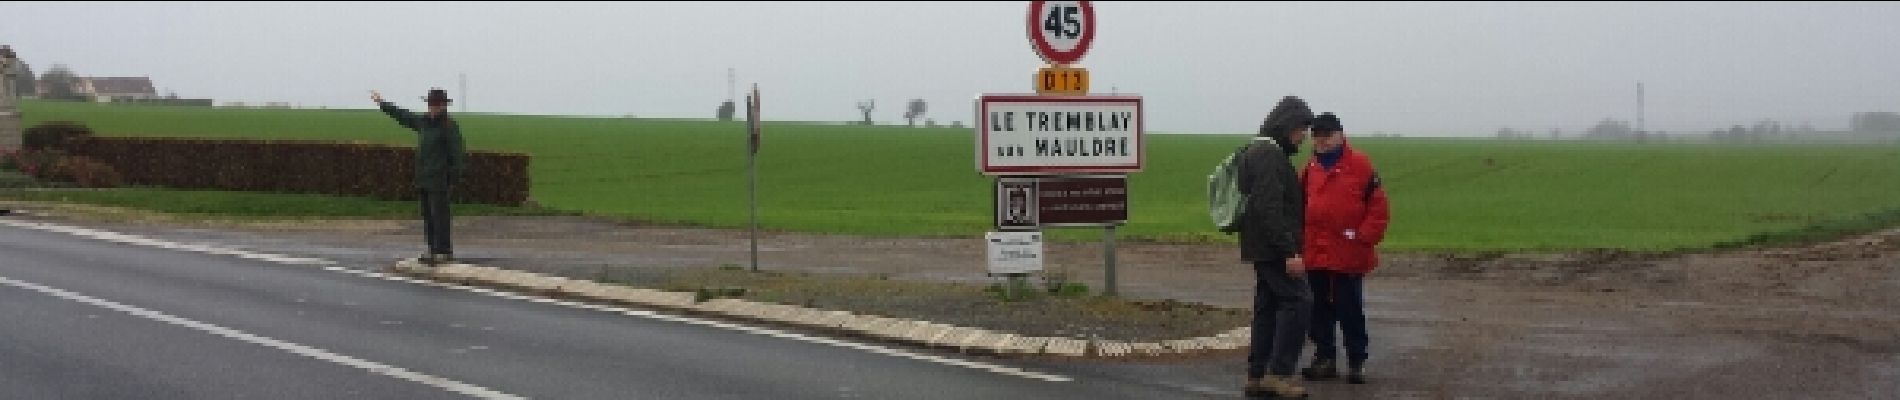 Point of interest Le Tremblay-sur-Mauldre - Traversée sous haute protection - Photo